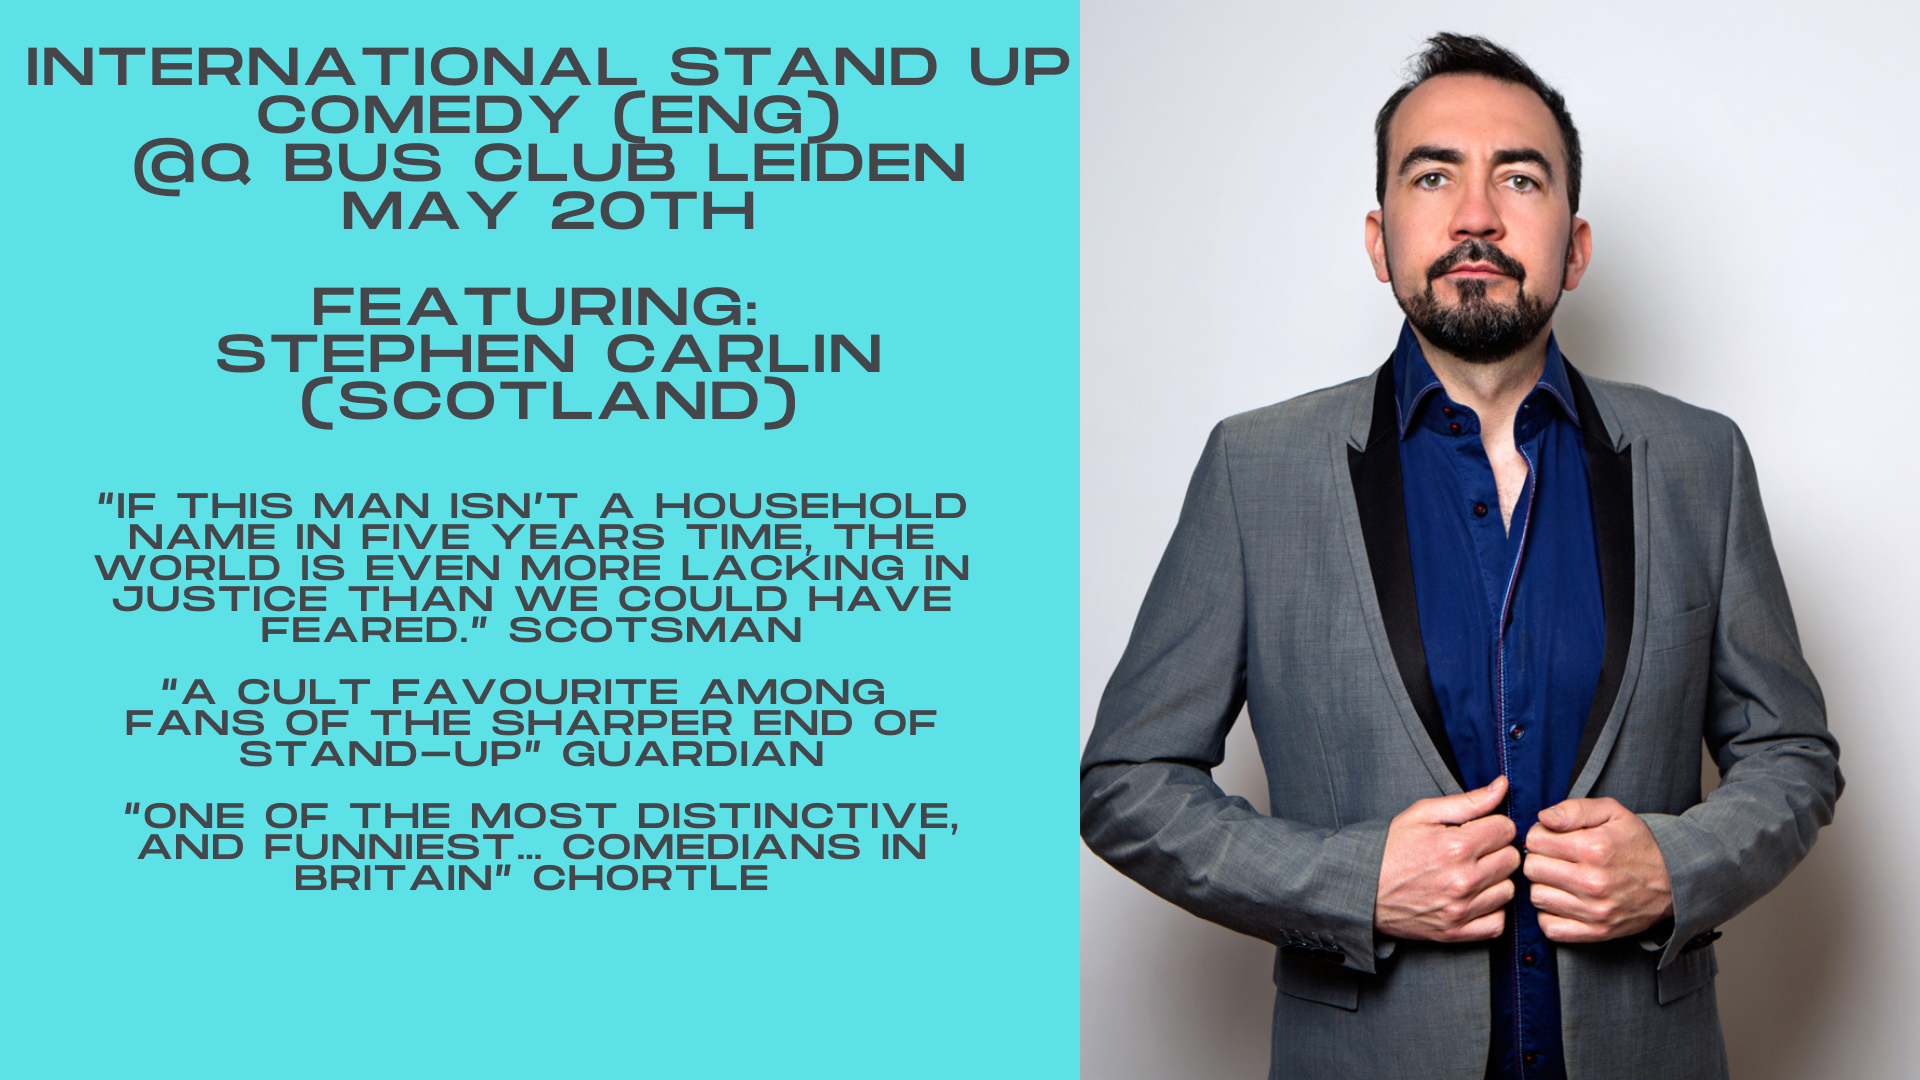 Ticket kopen voor evenement International Stand Up Comedy! (Featuring Stephen Carlin)